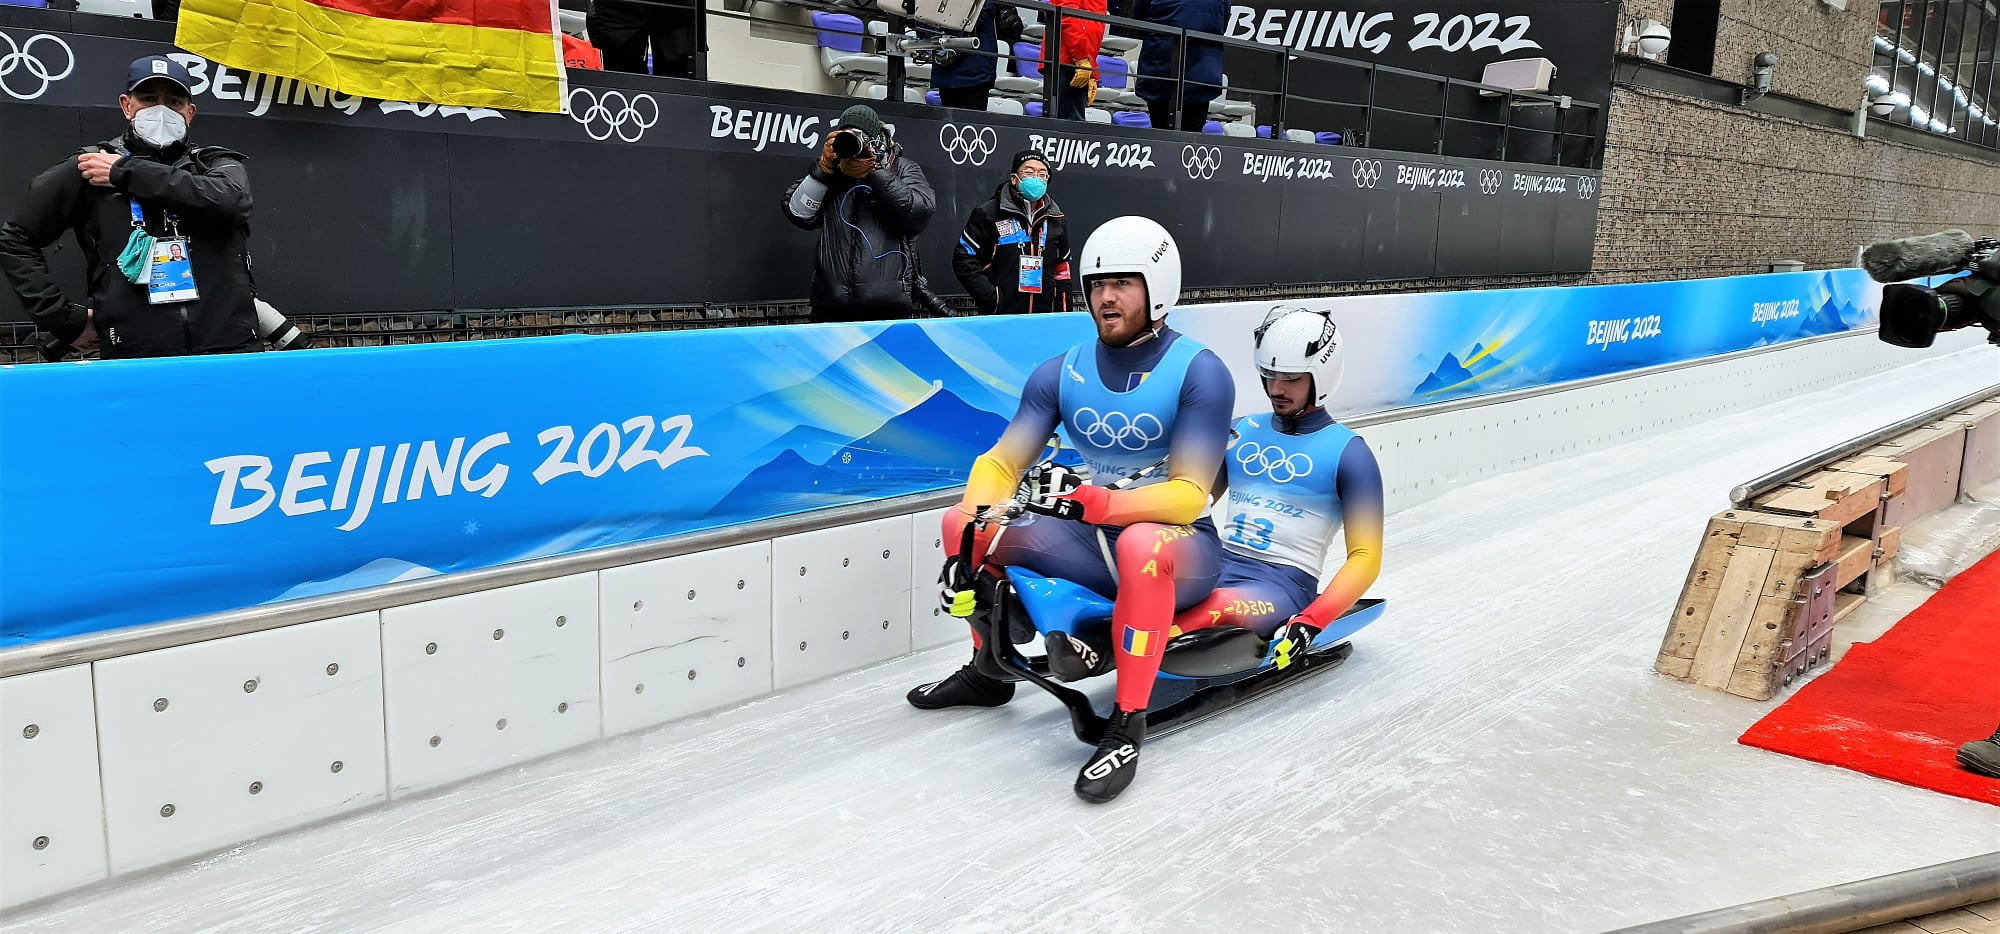 Marian Gîtlan şi Darius Şerban s-au clasat pe locul 14 în proba de sanie dublu masculin, la Jocurile Olimpice de iarnă